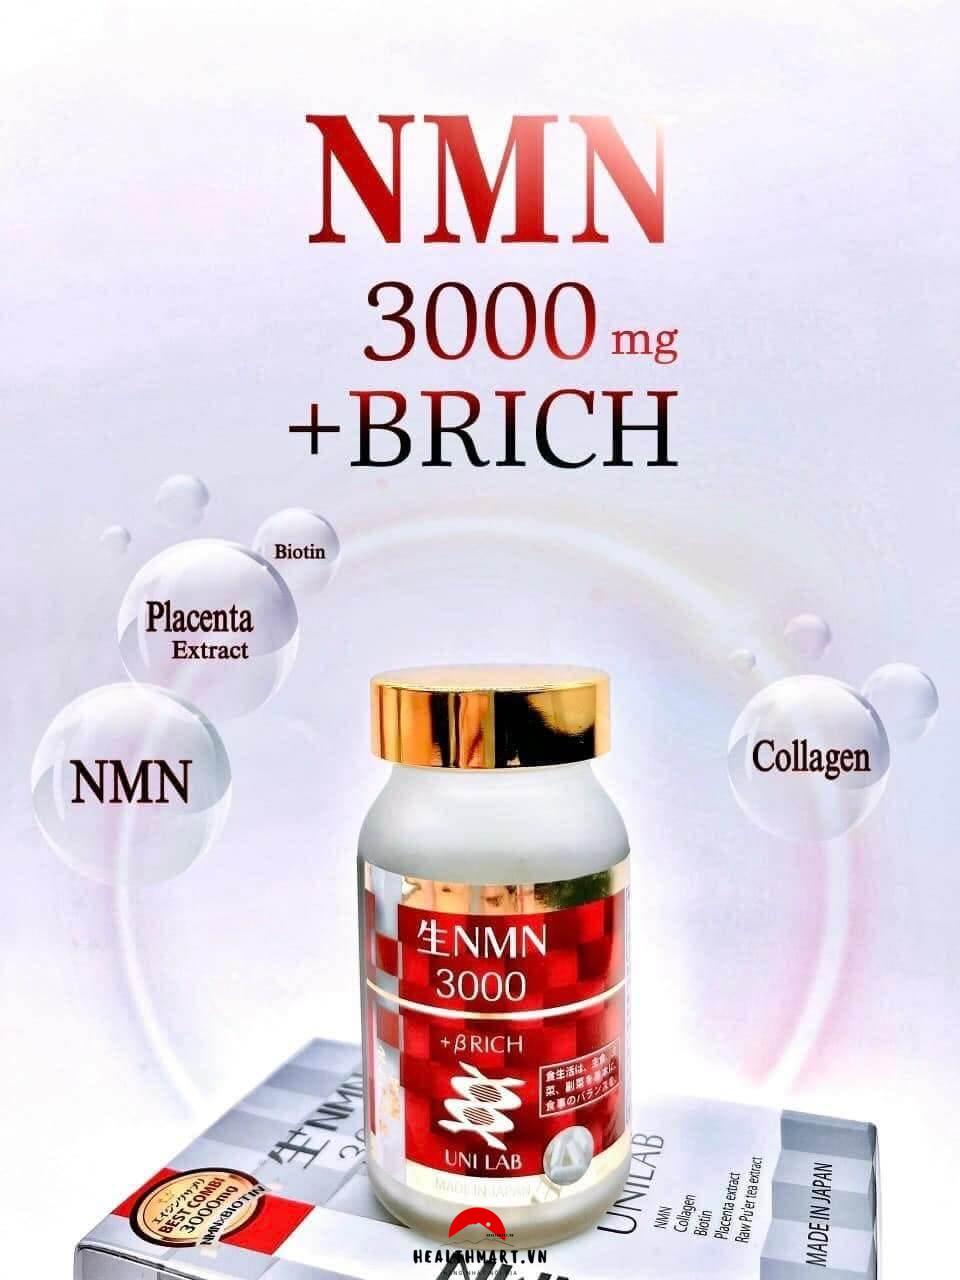 NMN 3000 Brich Unilab